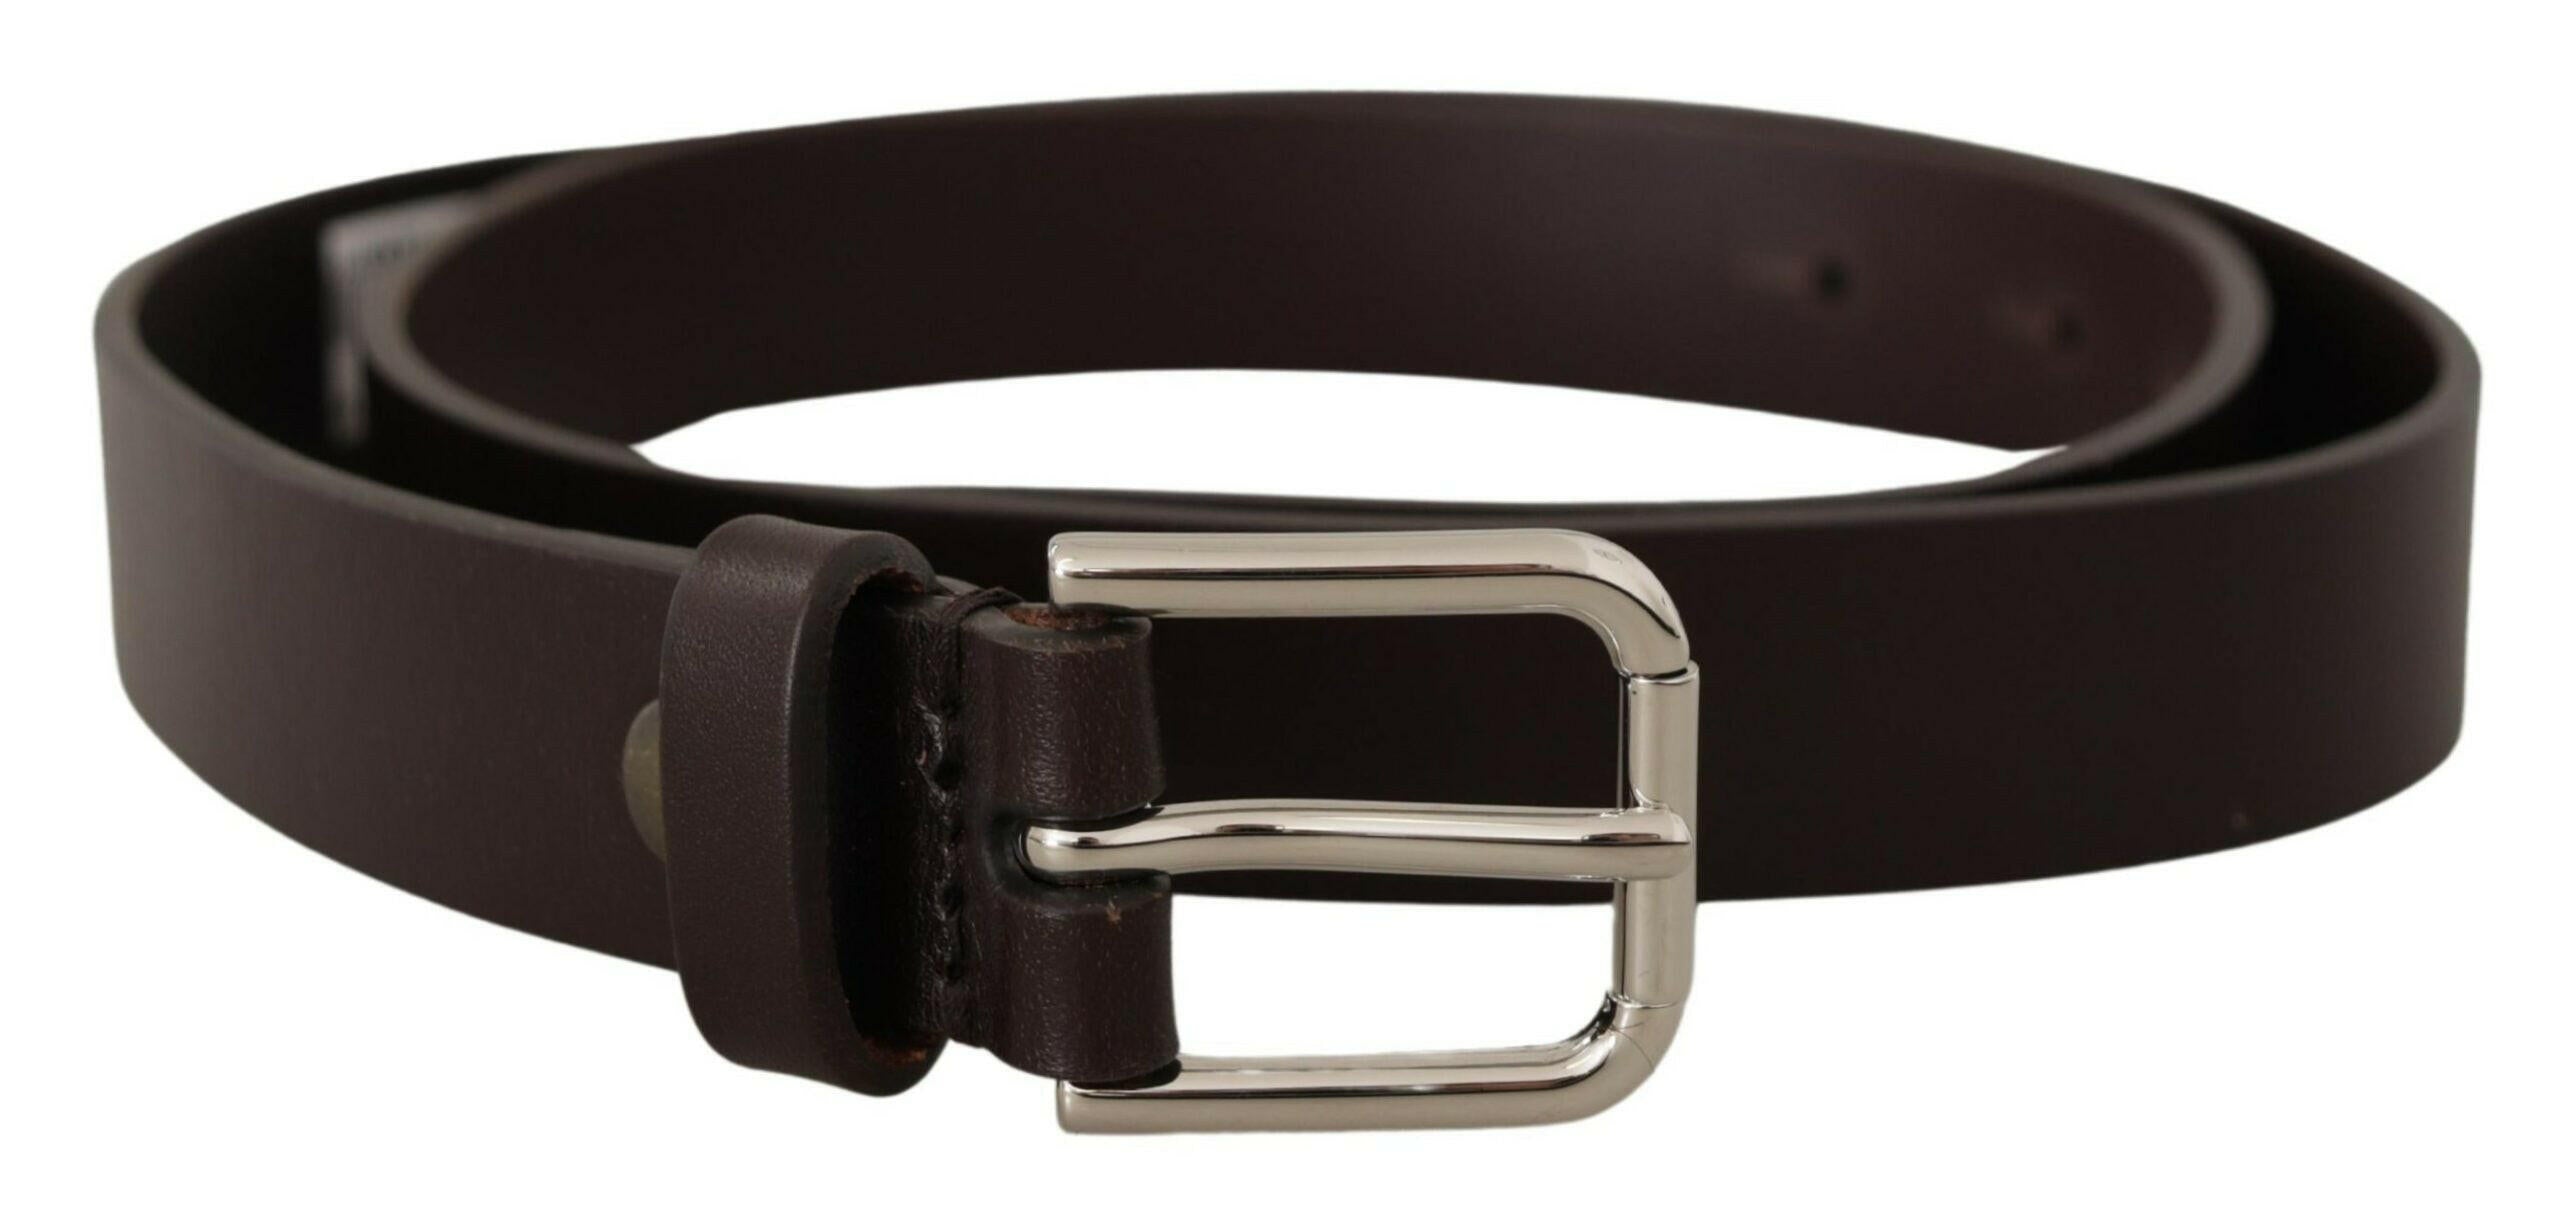 Louis Vuitton - Authenticated Belt - Metal Brown Plain for Men, Good Condition